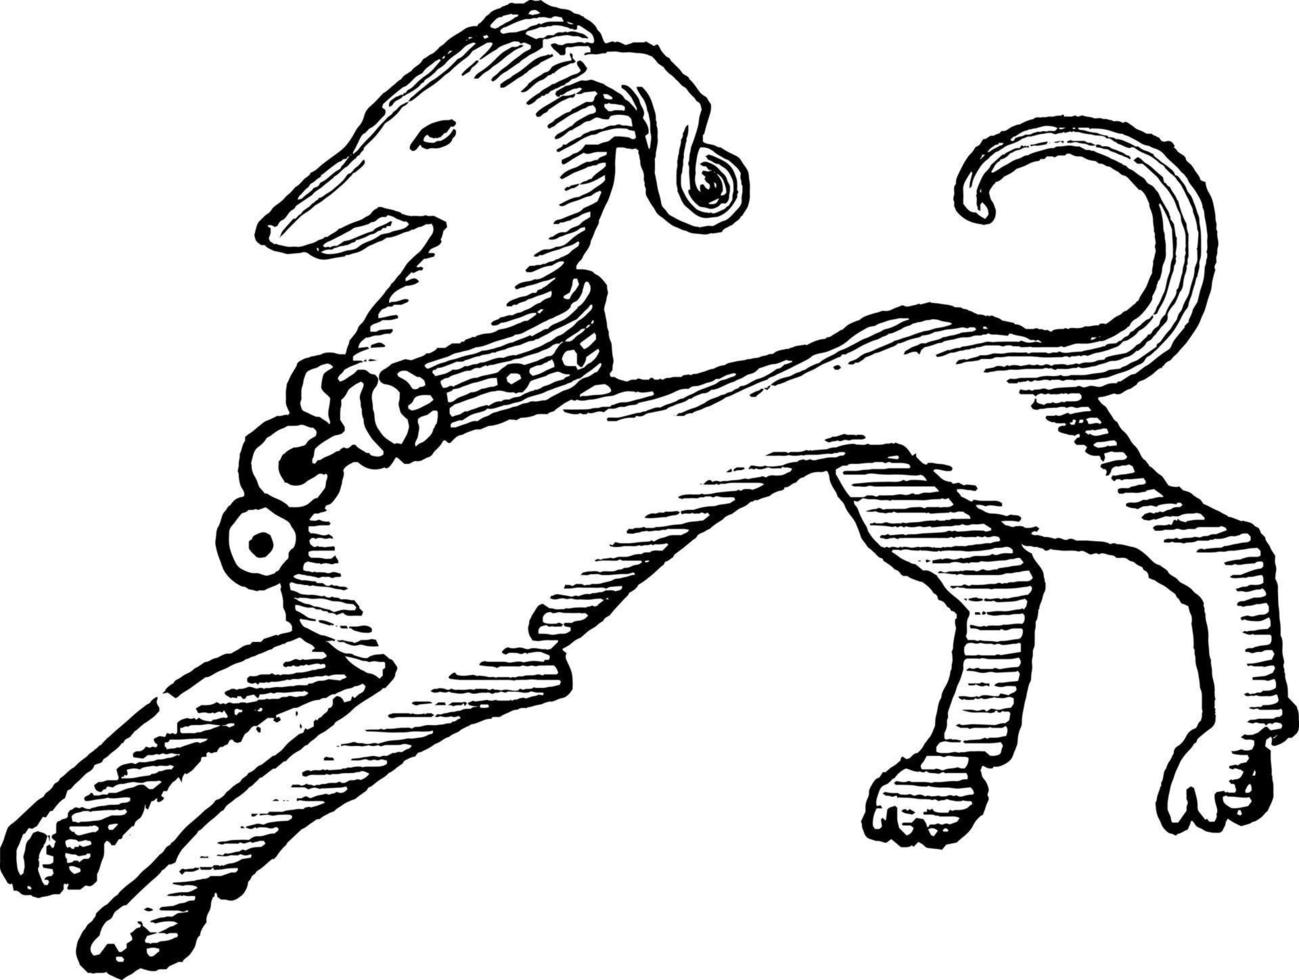 Dog, vintage illustration. vector